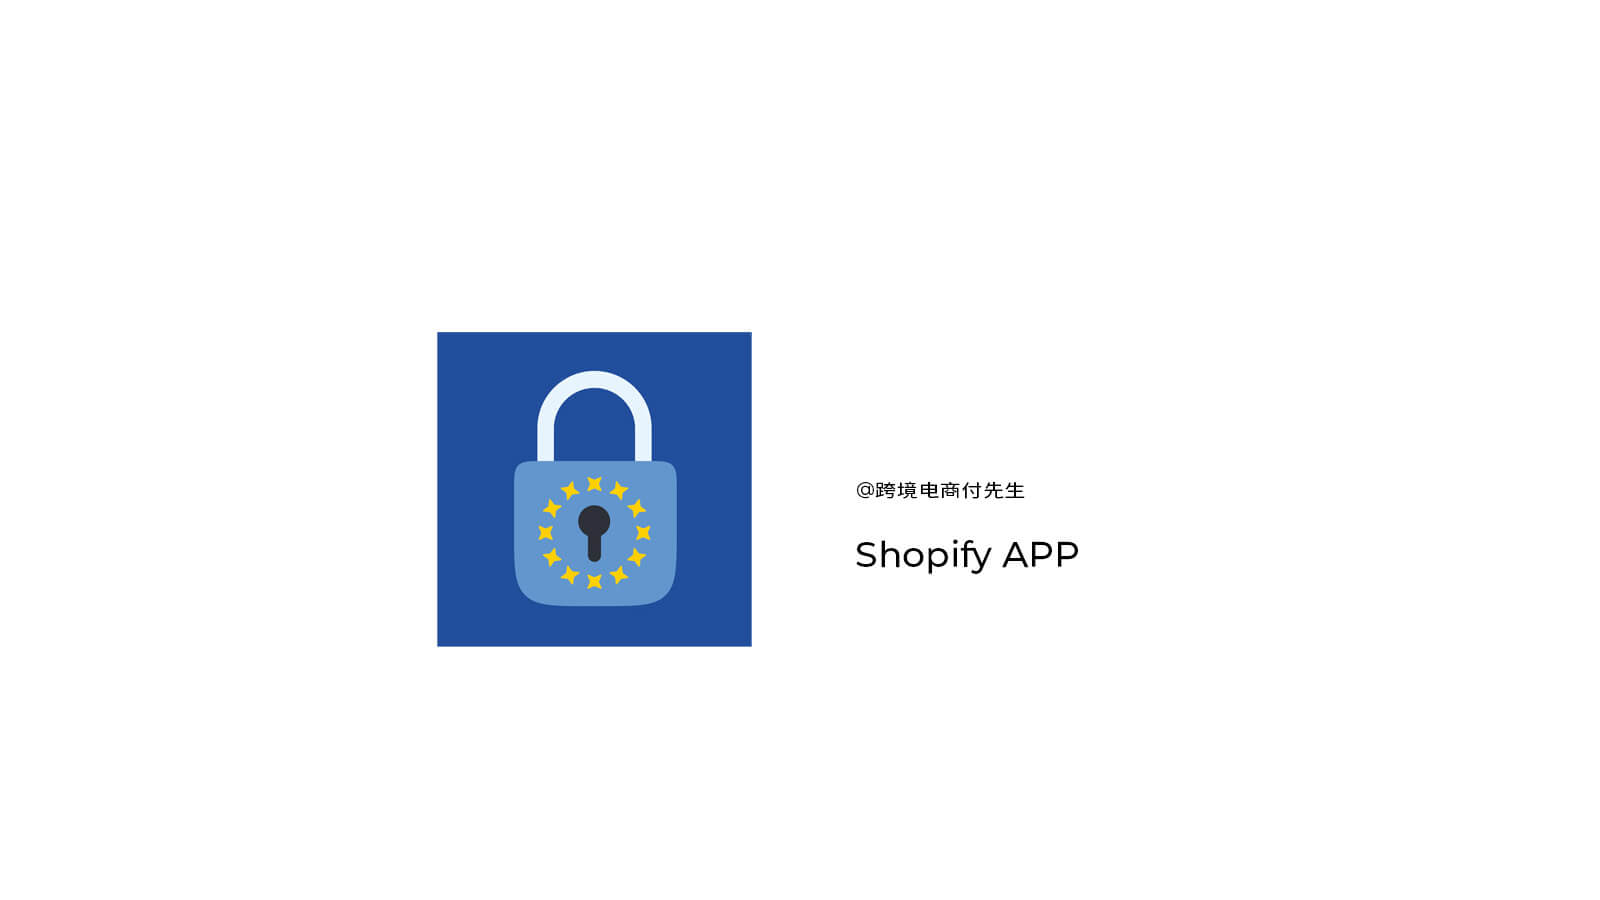 Shopify APP Pandectes GDPR Compliance